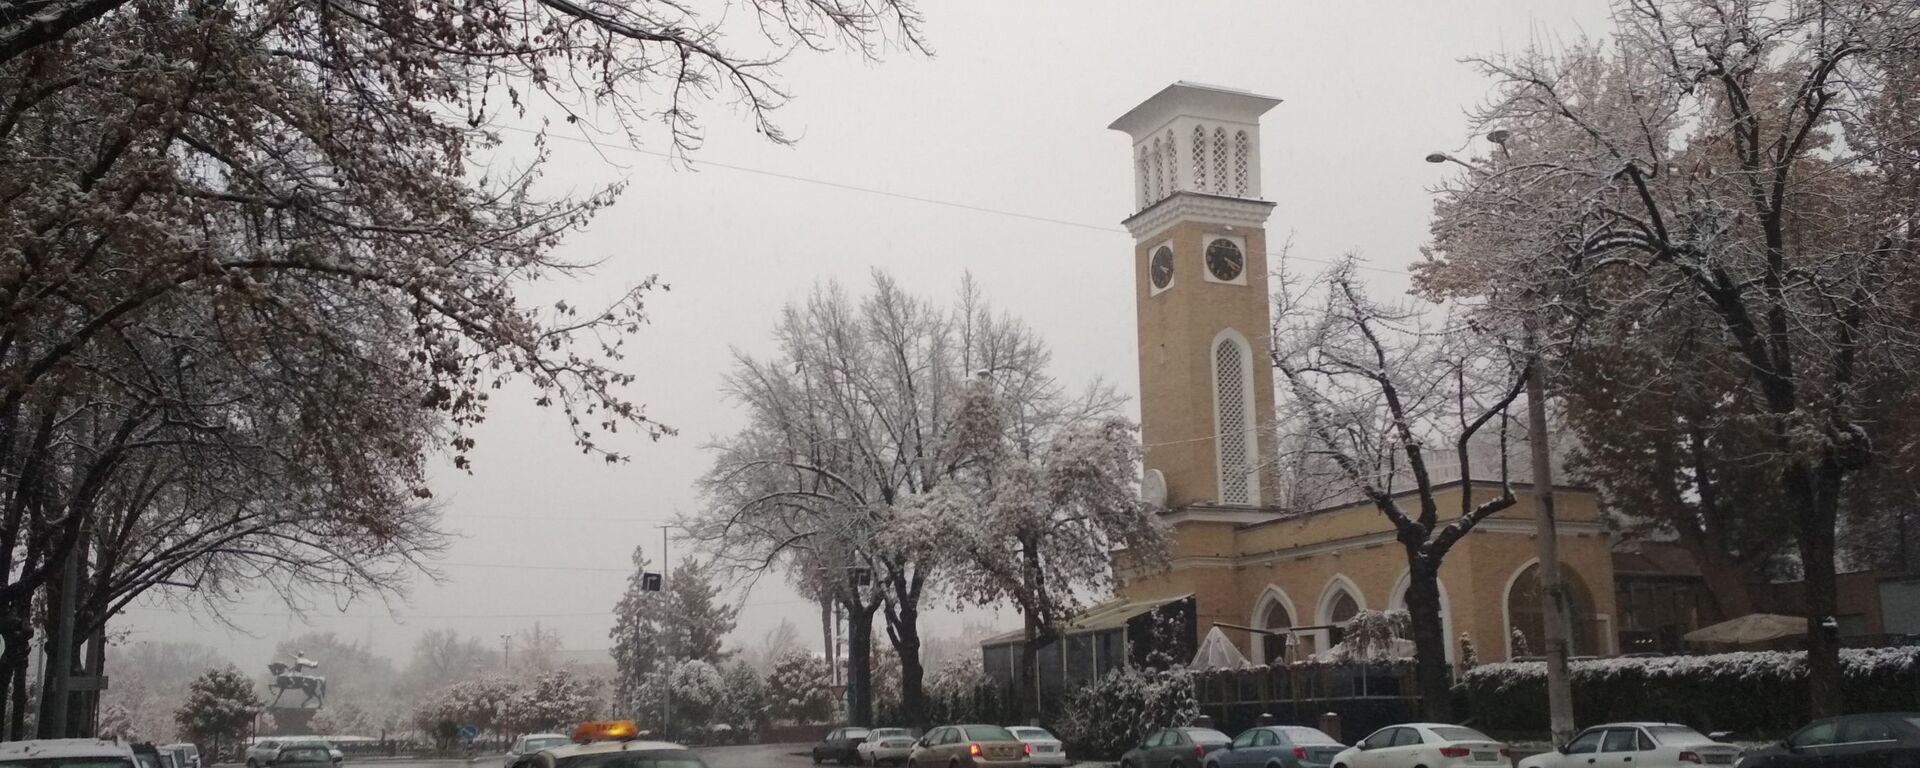 Снег в Ташкенте - Sputnik Узбекистан, 1920, 10.12.2020